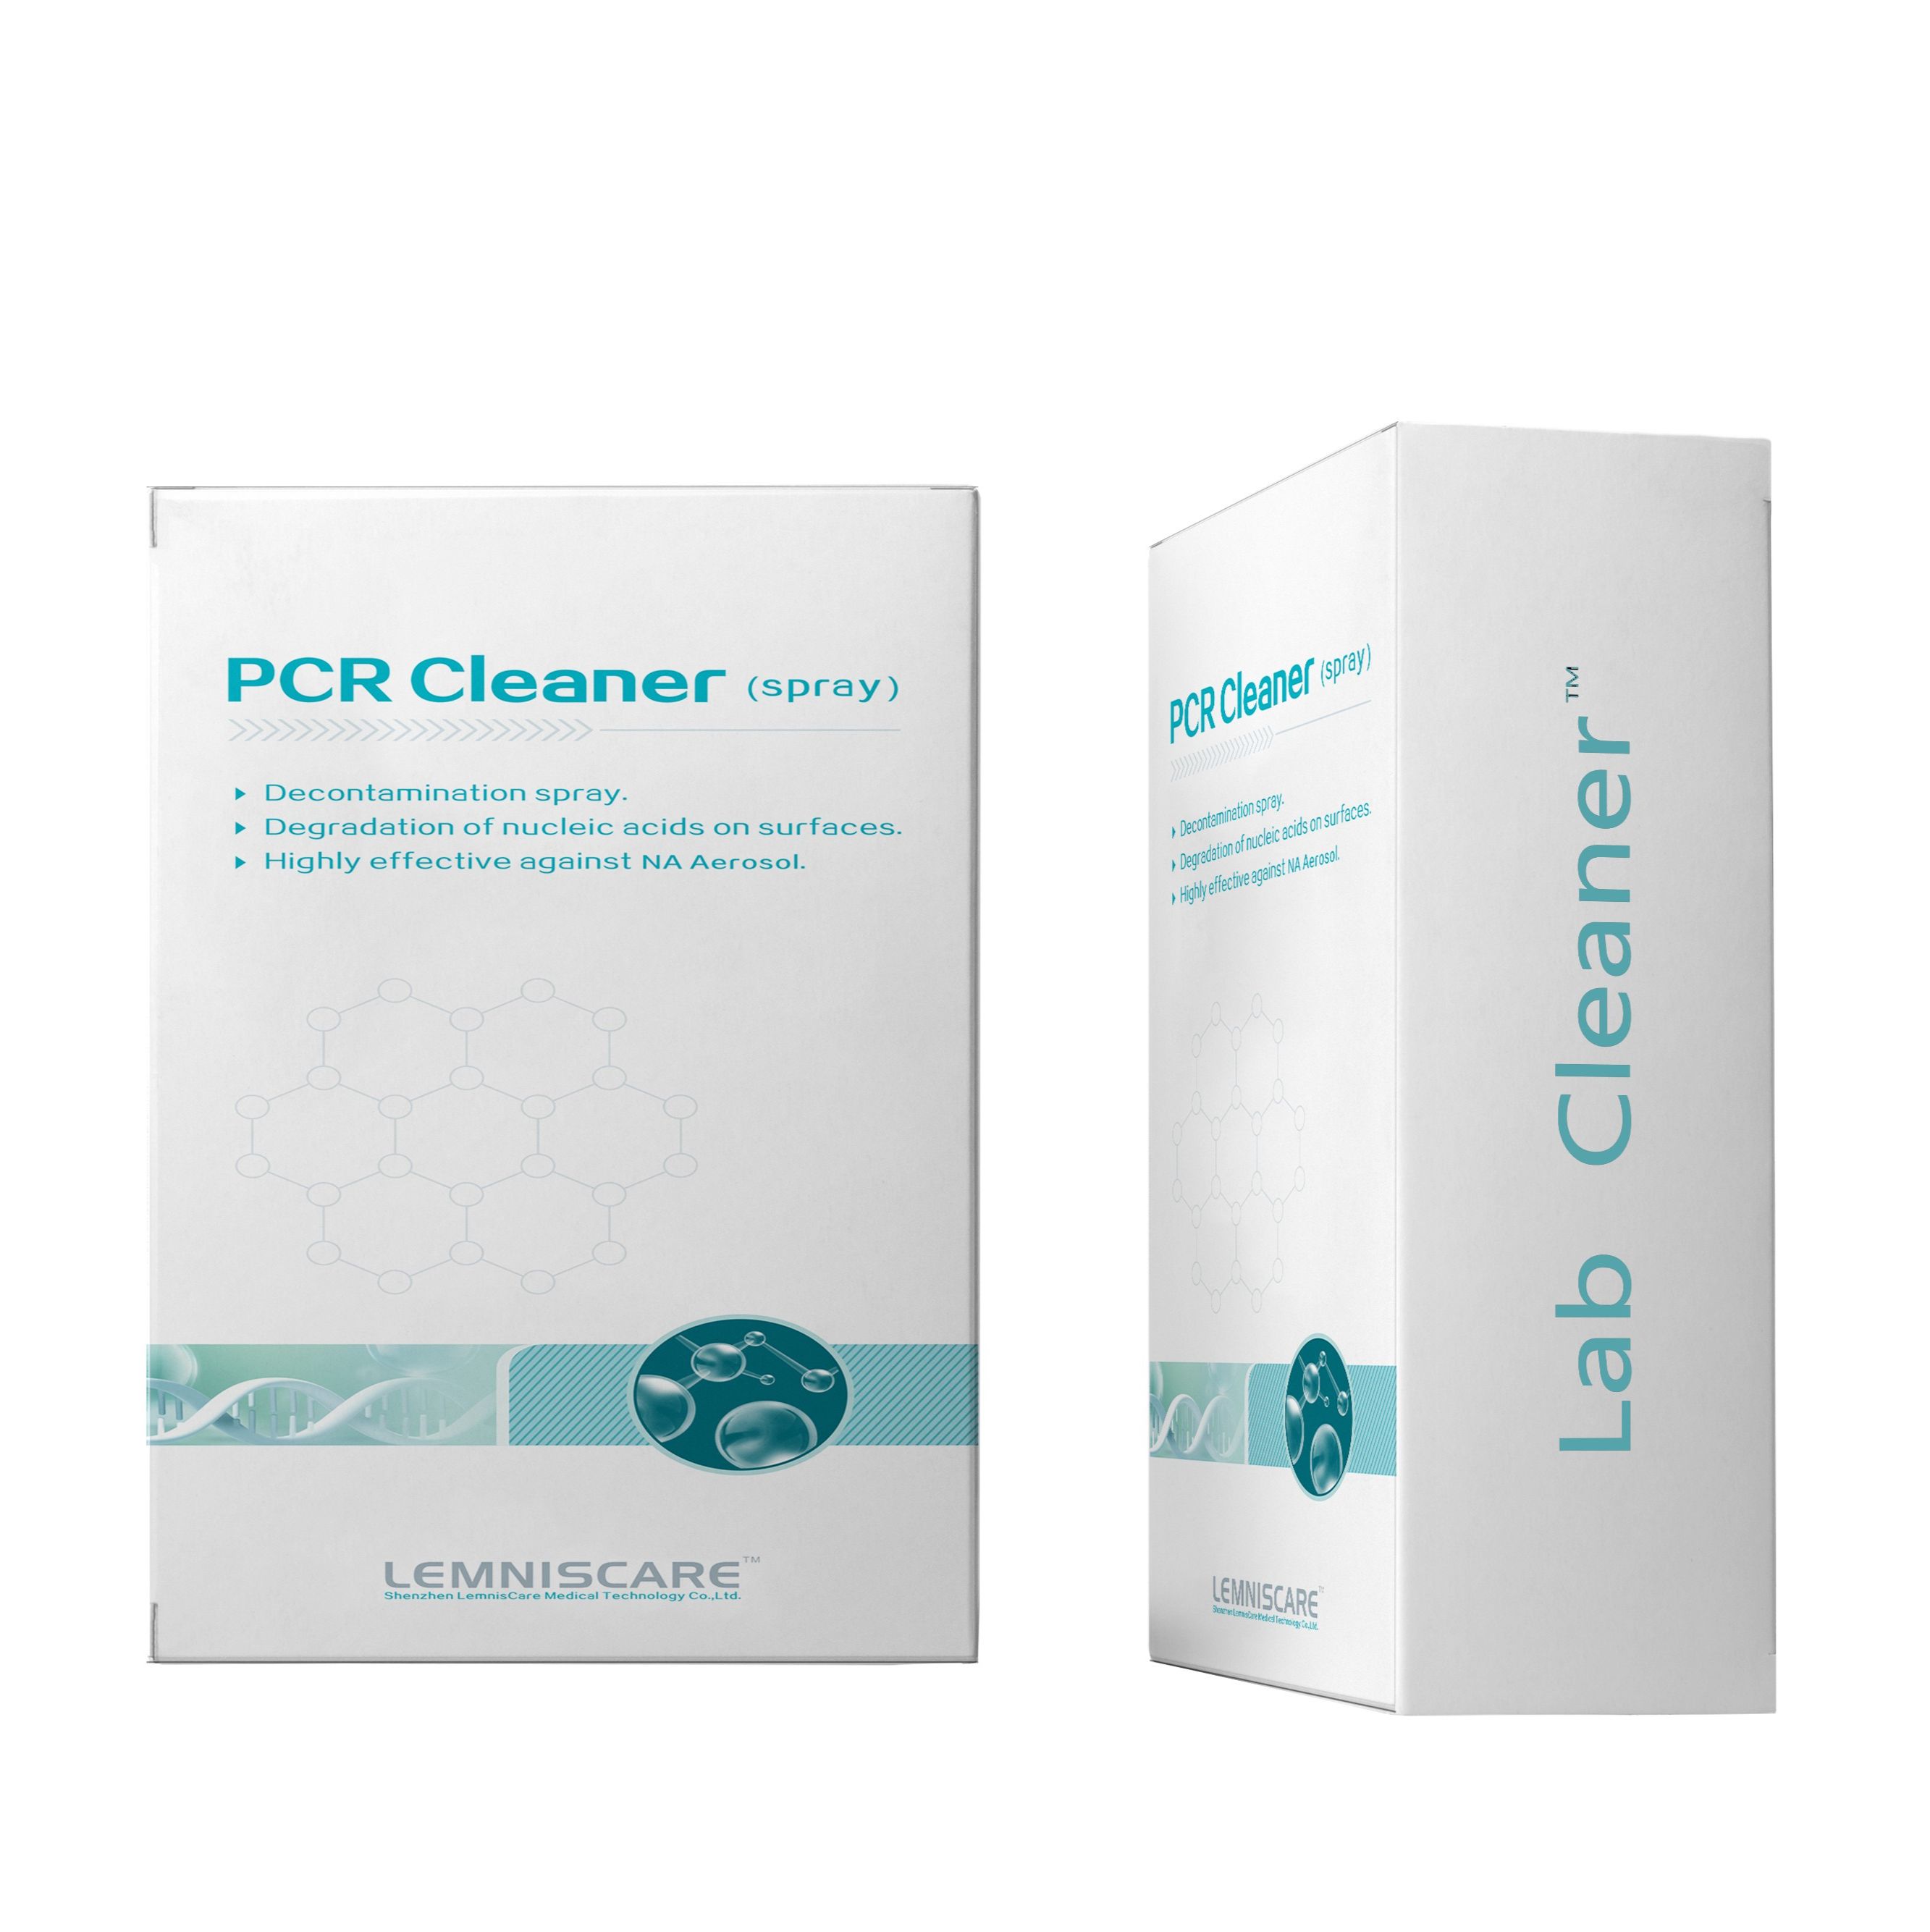 核酸污染清除剂（PCR Cleaner）